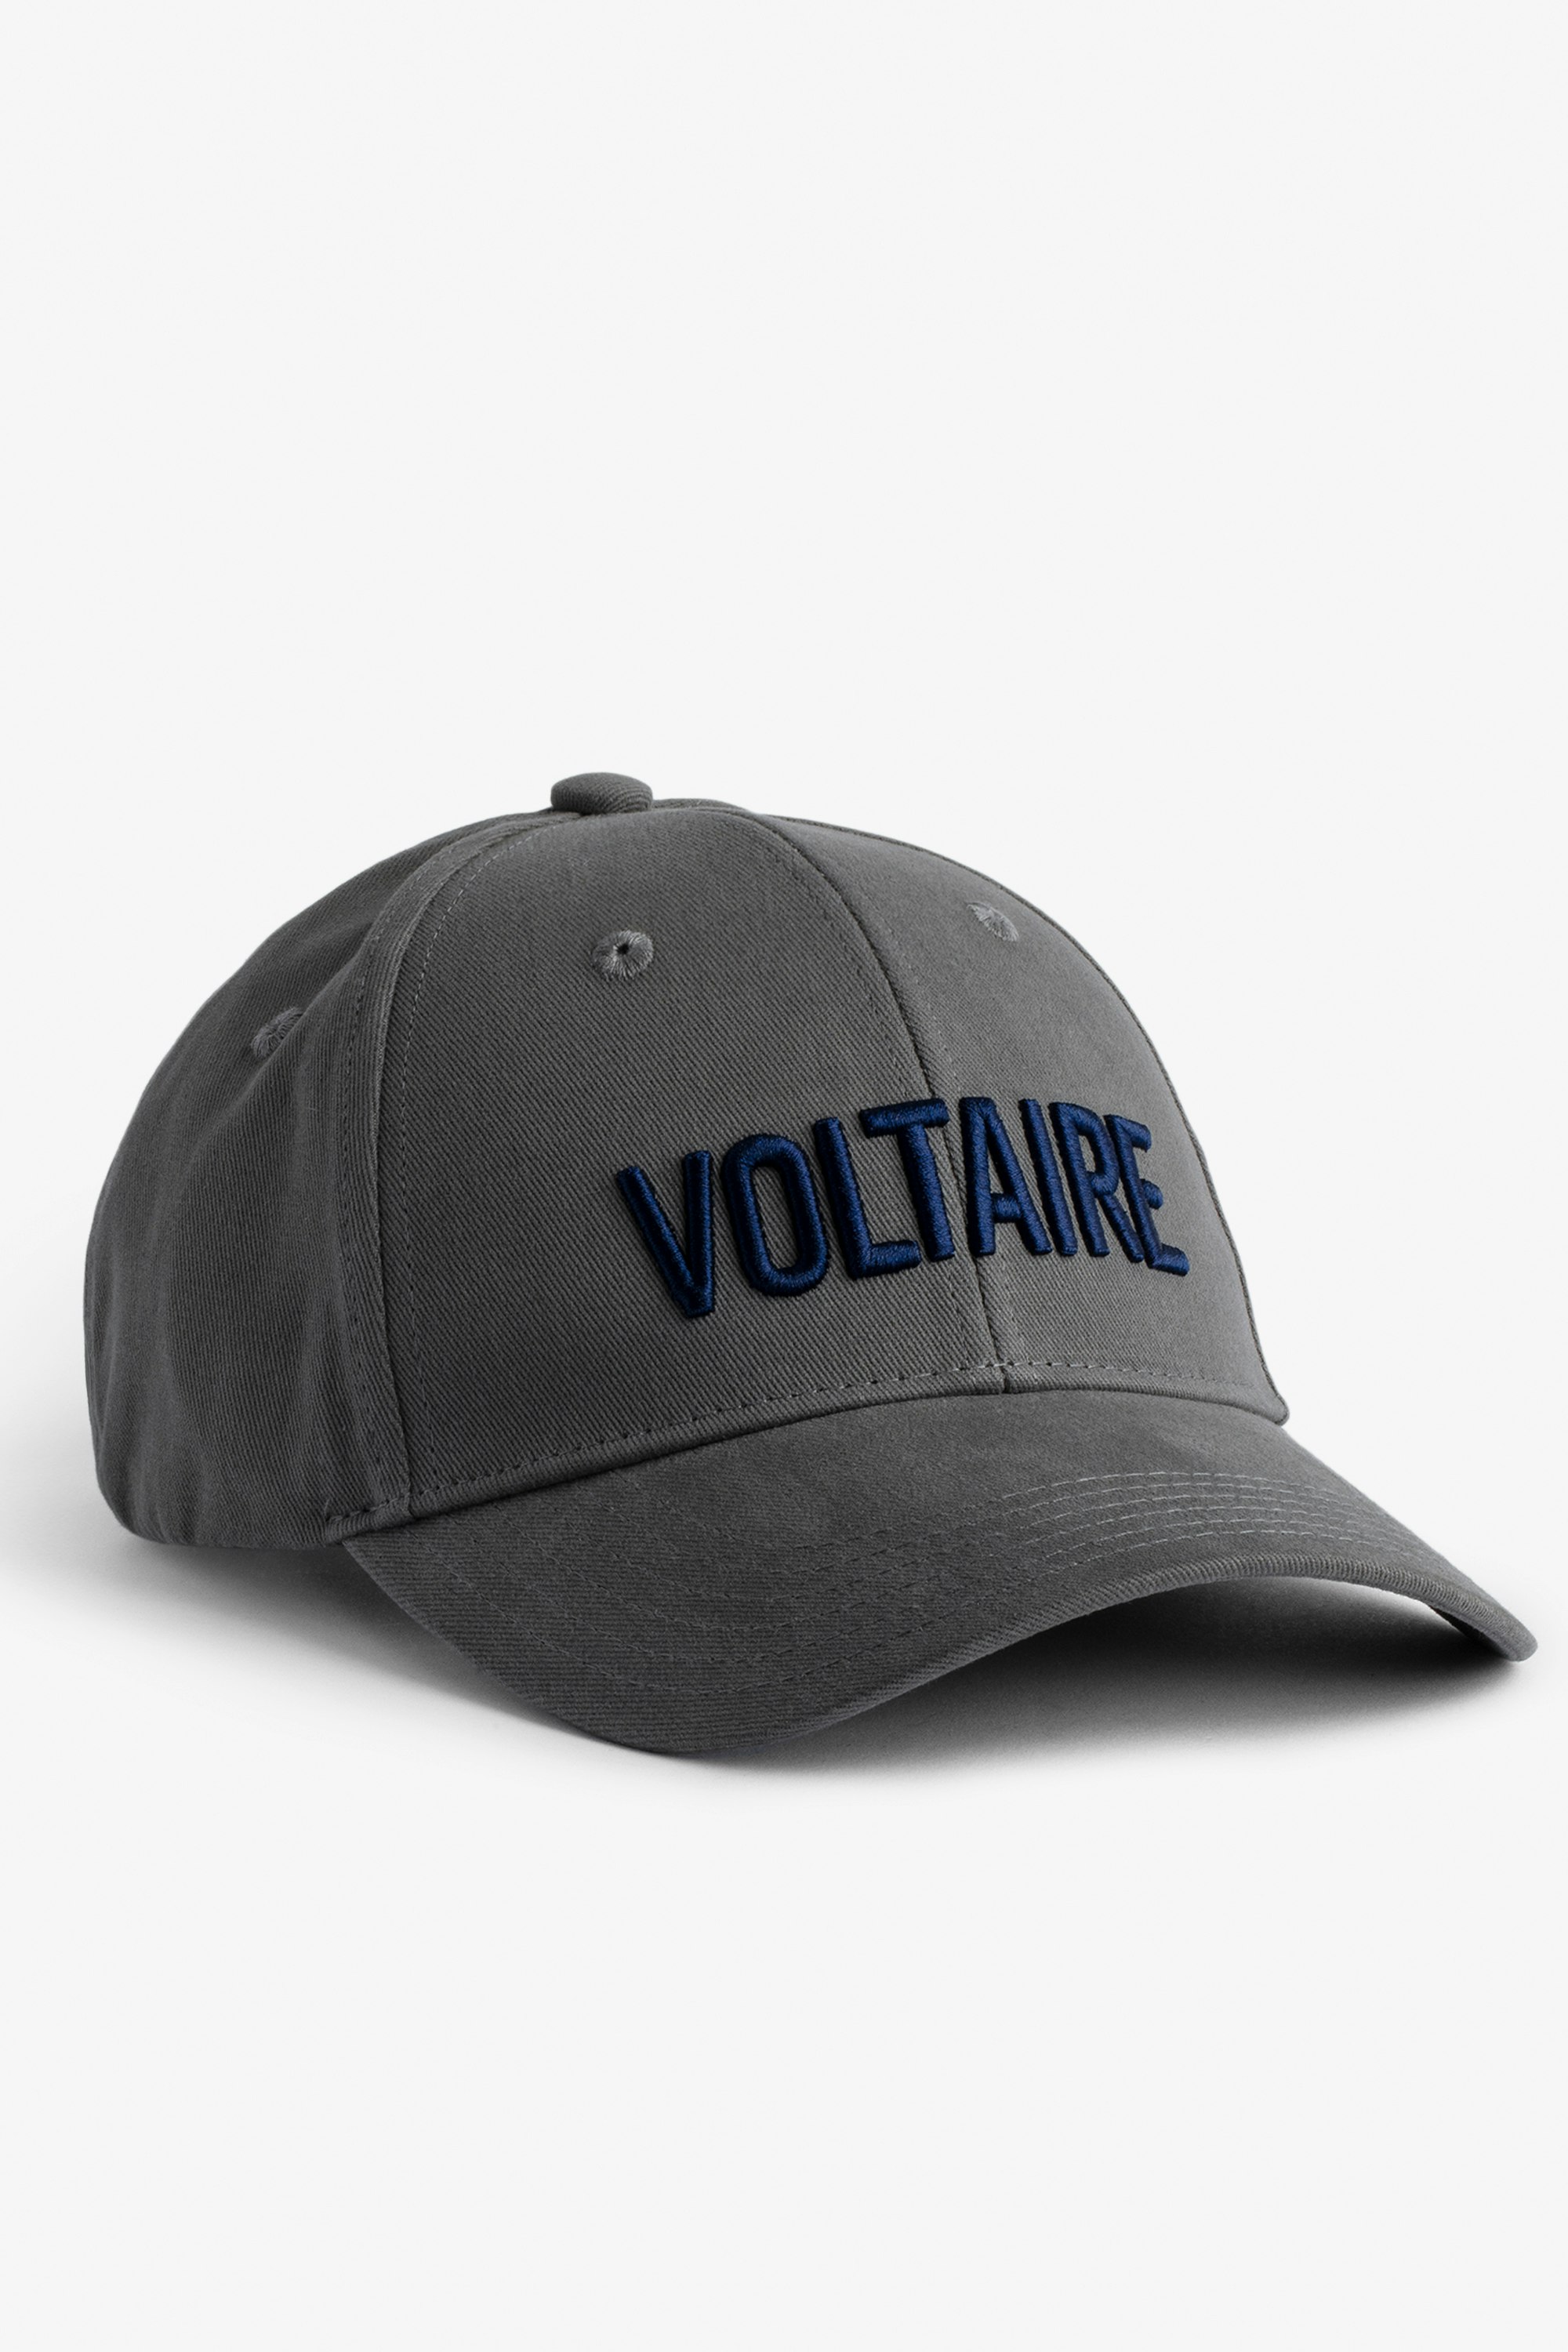 Schirmmütze Klelia Voltaire Mit „Voltaire“ bestickte Herren-Schirmmütze aus grauer Baumwolle.